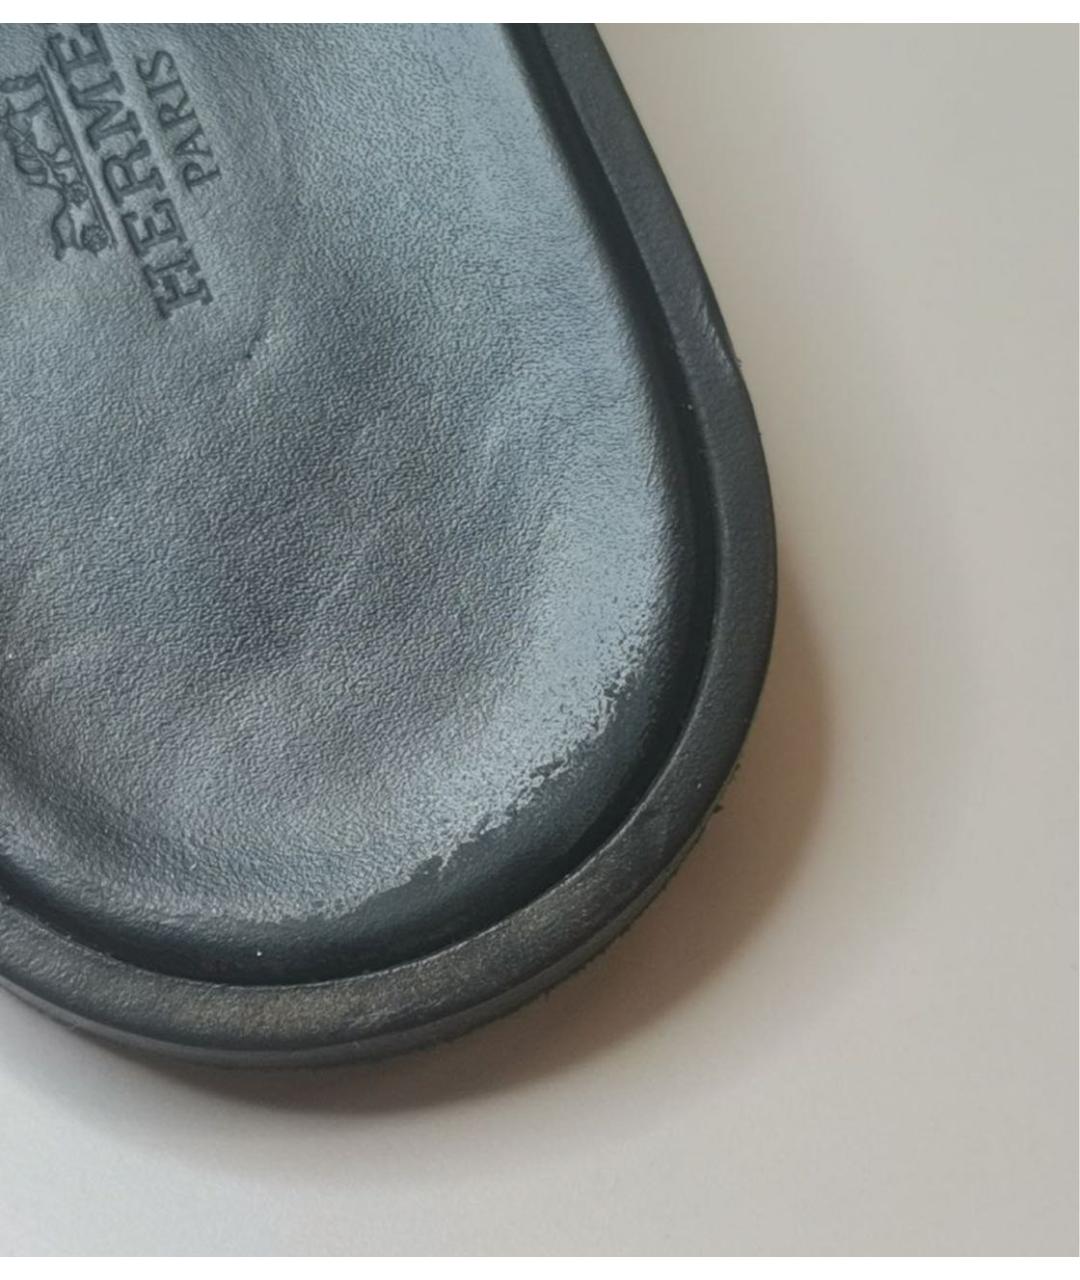 HERMES PRE-OWNED Черные кожаные сандалии, фото 7